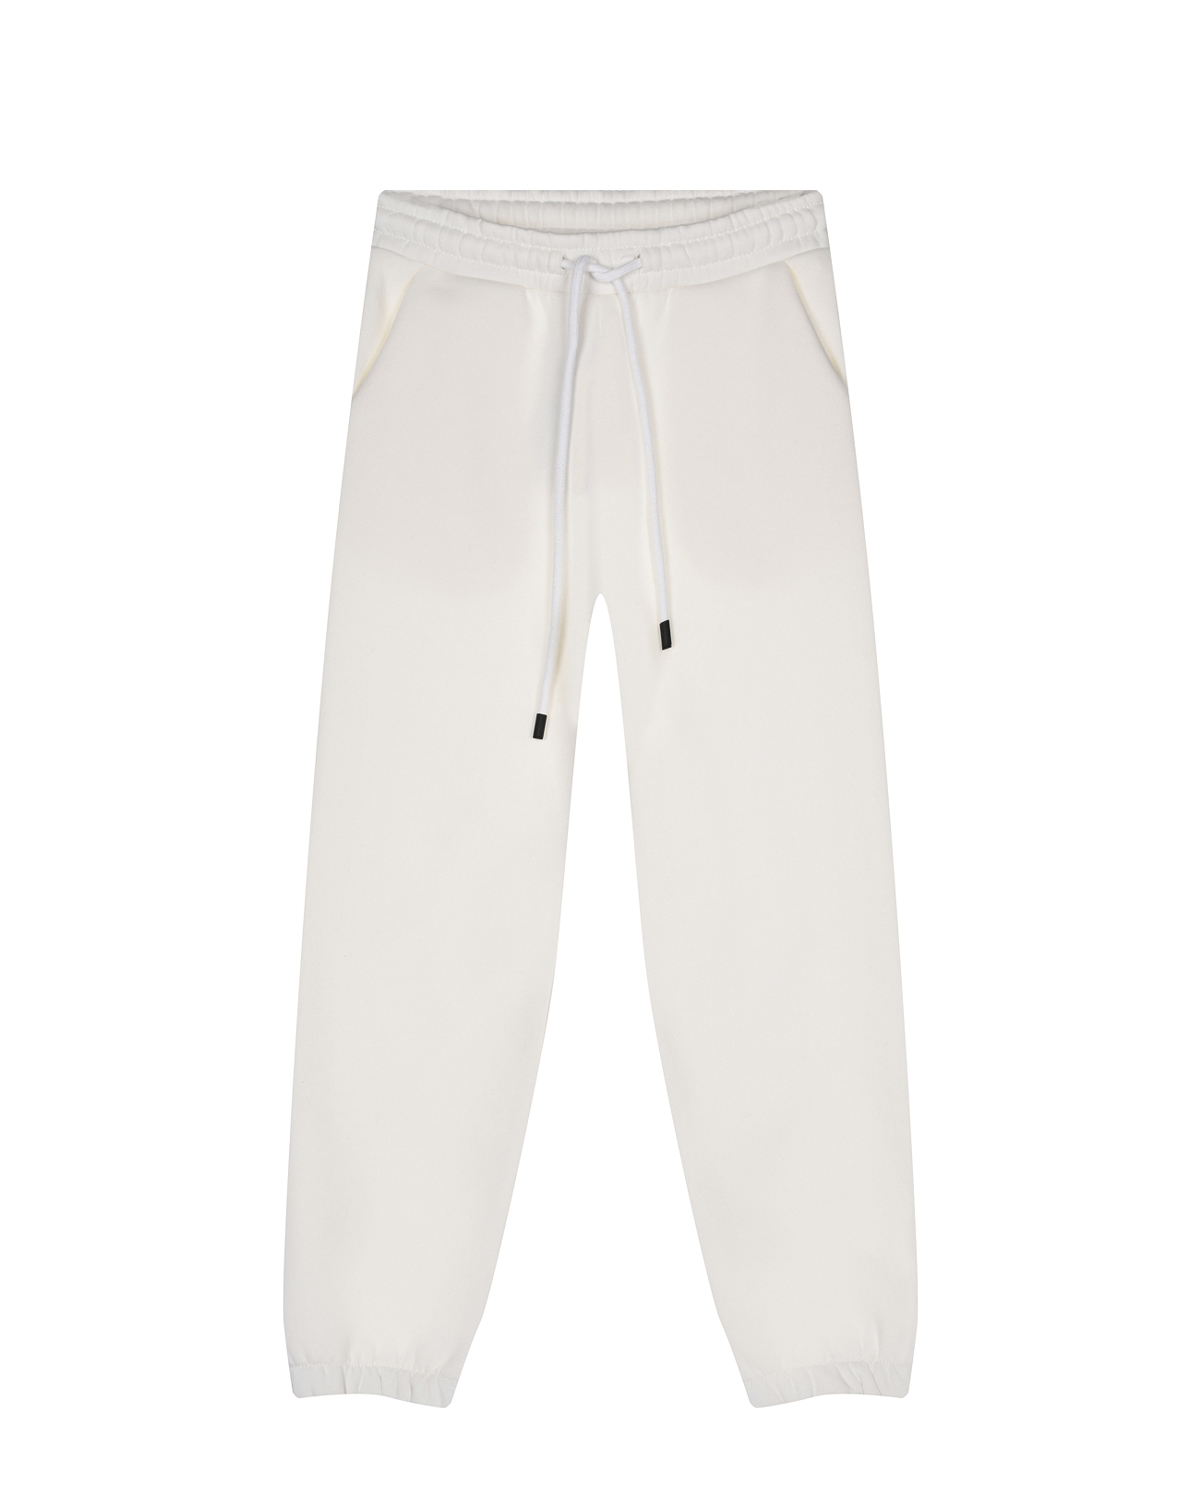 Спортивные брюки молочного цвета Dan Maralex детские, размер 116 - фото 1